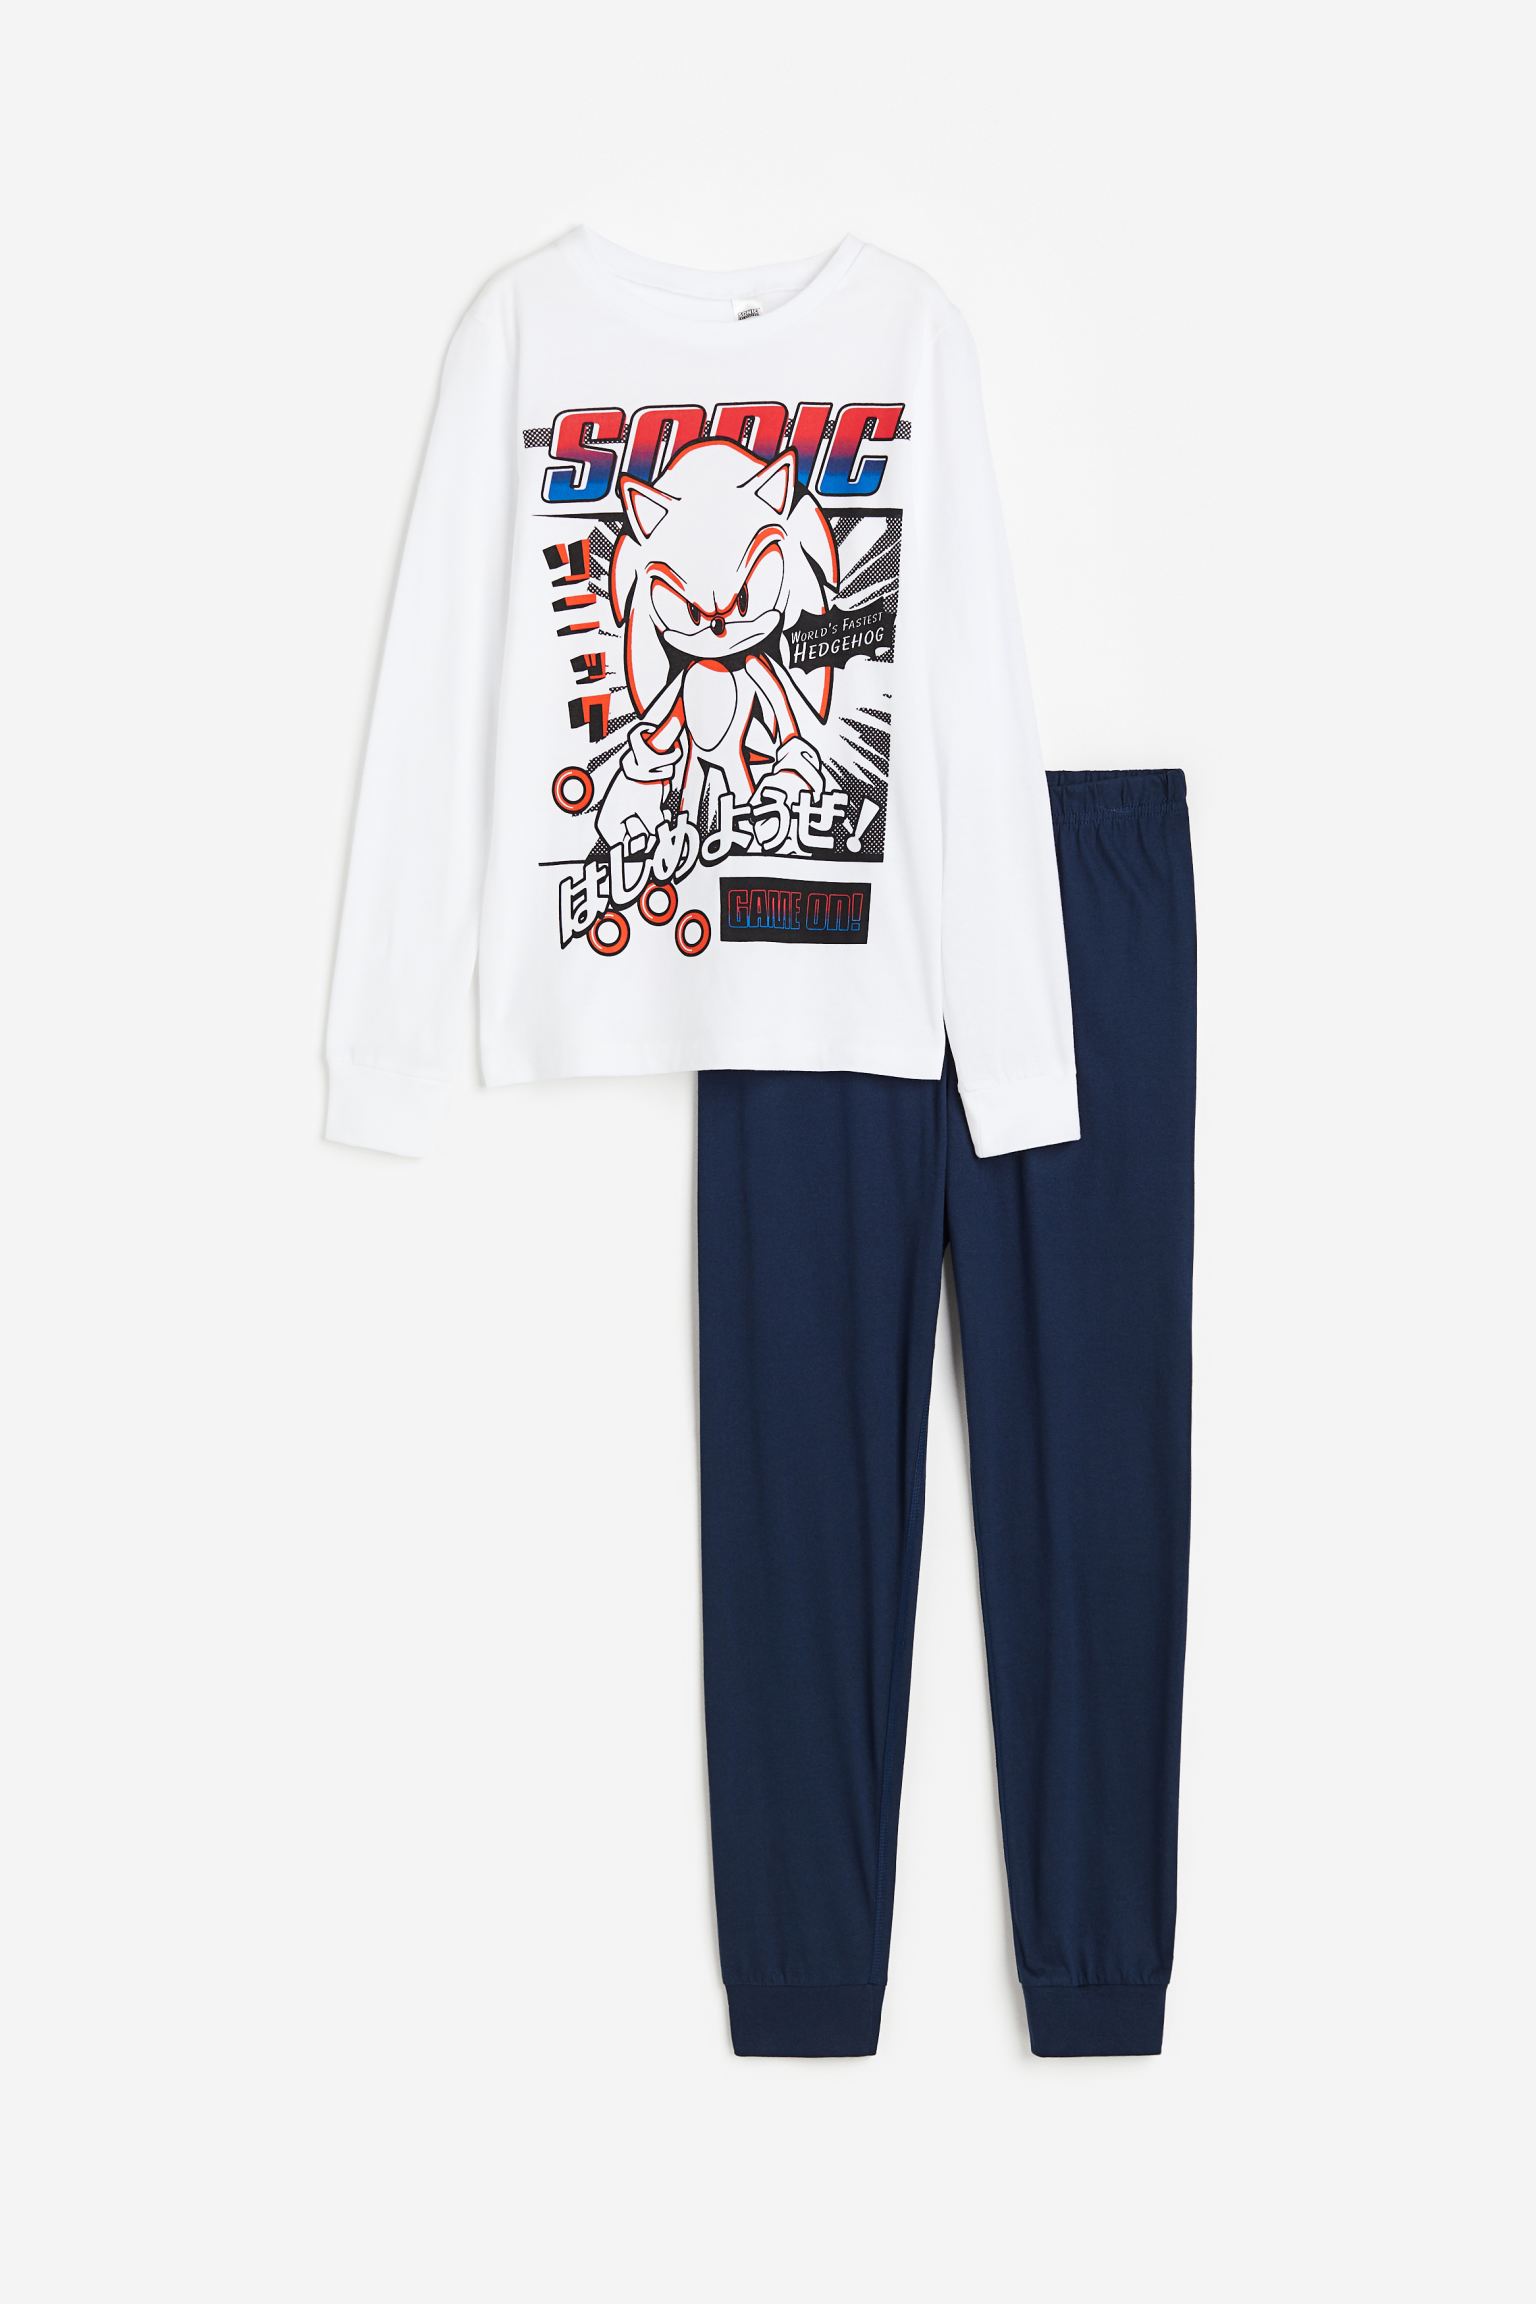 Пижамный комплект H&M Kids Jersey Sonic the Hedgehog, 2 предмета, белый пижама let s go брюки с манжетами рукава с манжетами манжеты пояс на резинке размер 110 бирюзовый